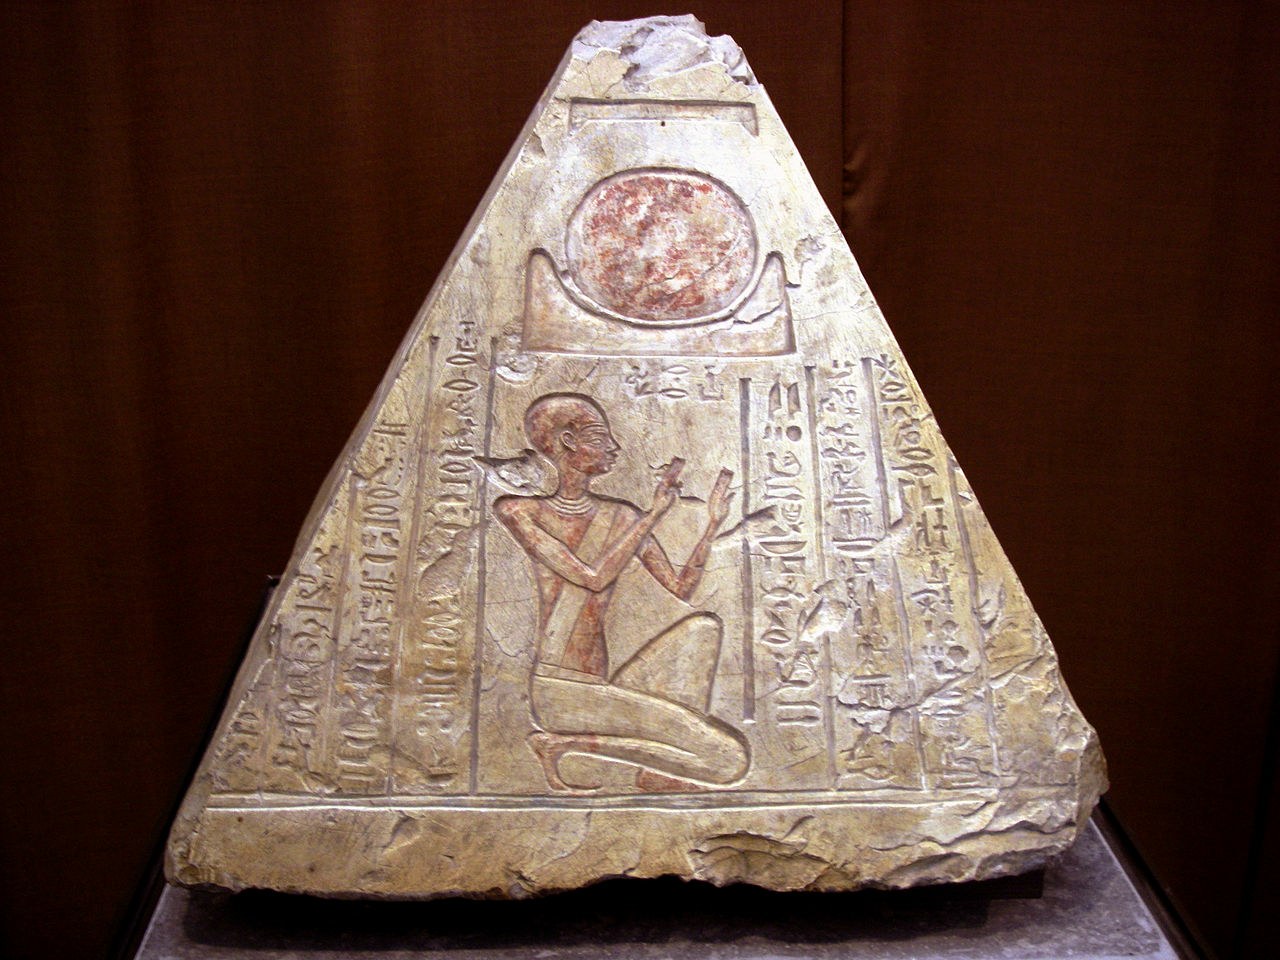 Forntida telegraf: Ljussignaler som används för kommunikation i det antika Egypten? 1